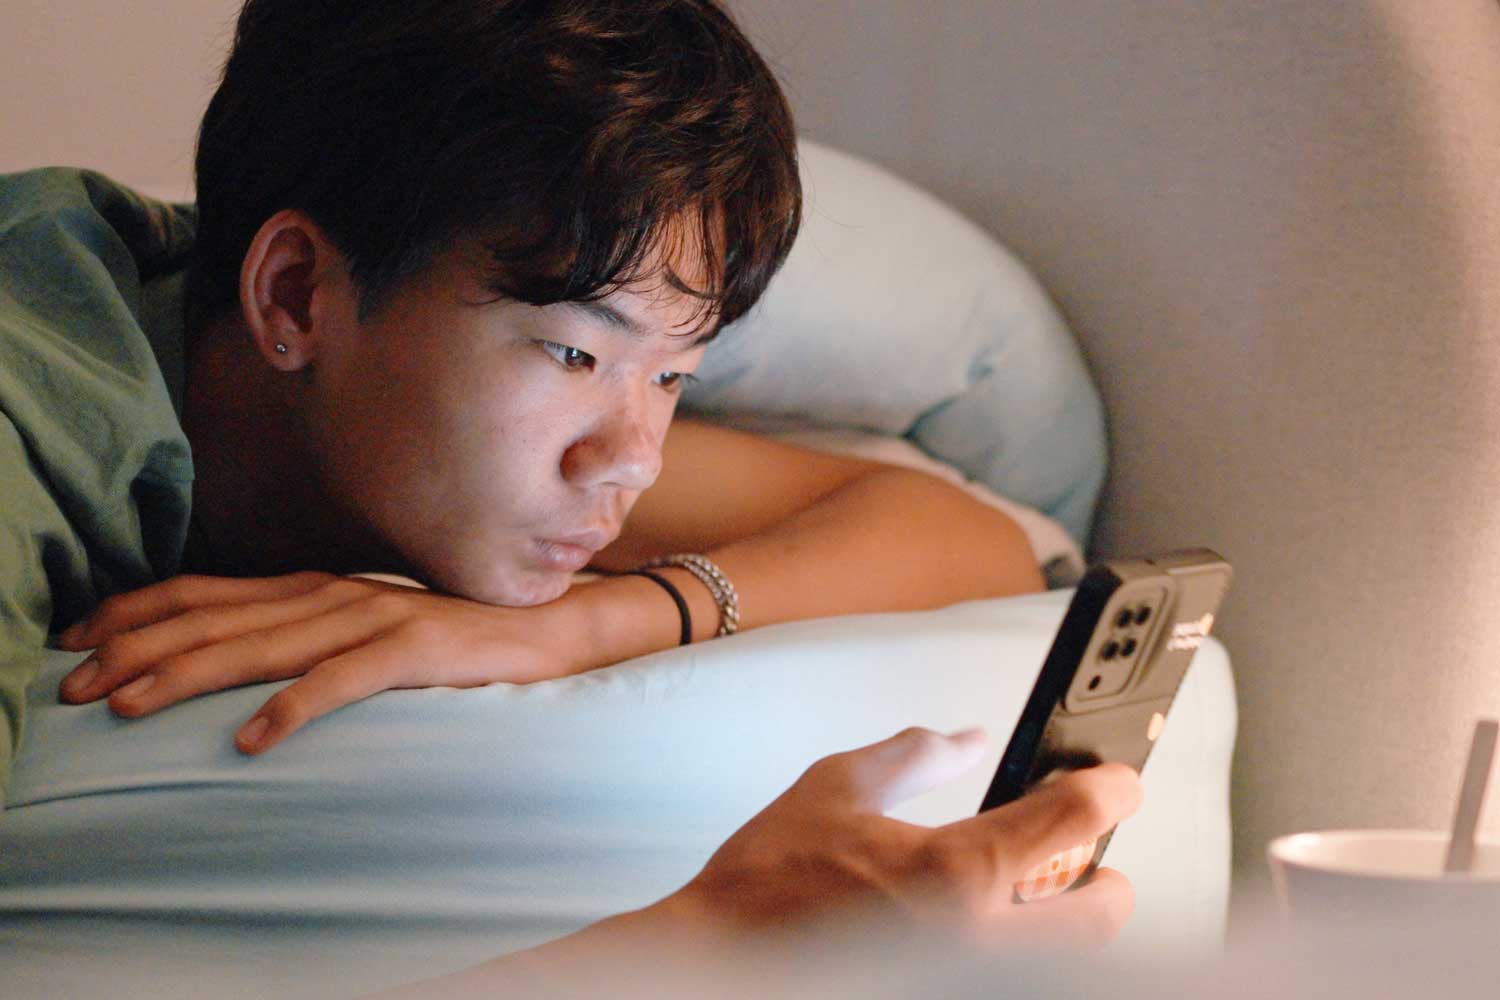 A teenage boy looking at his phone at night.